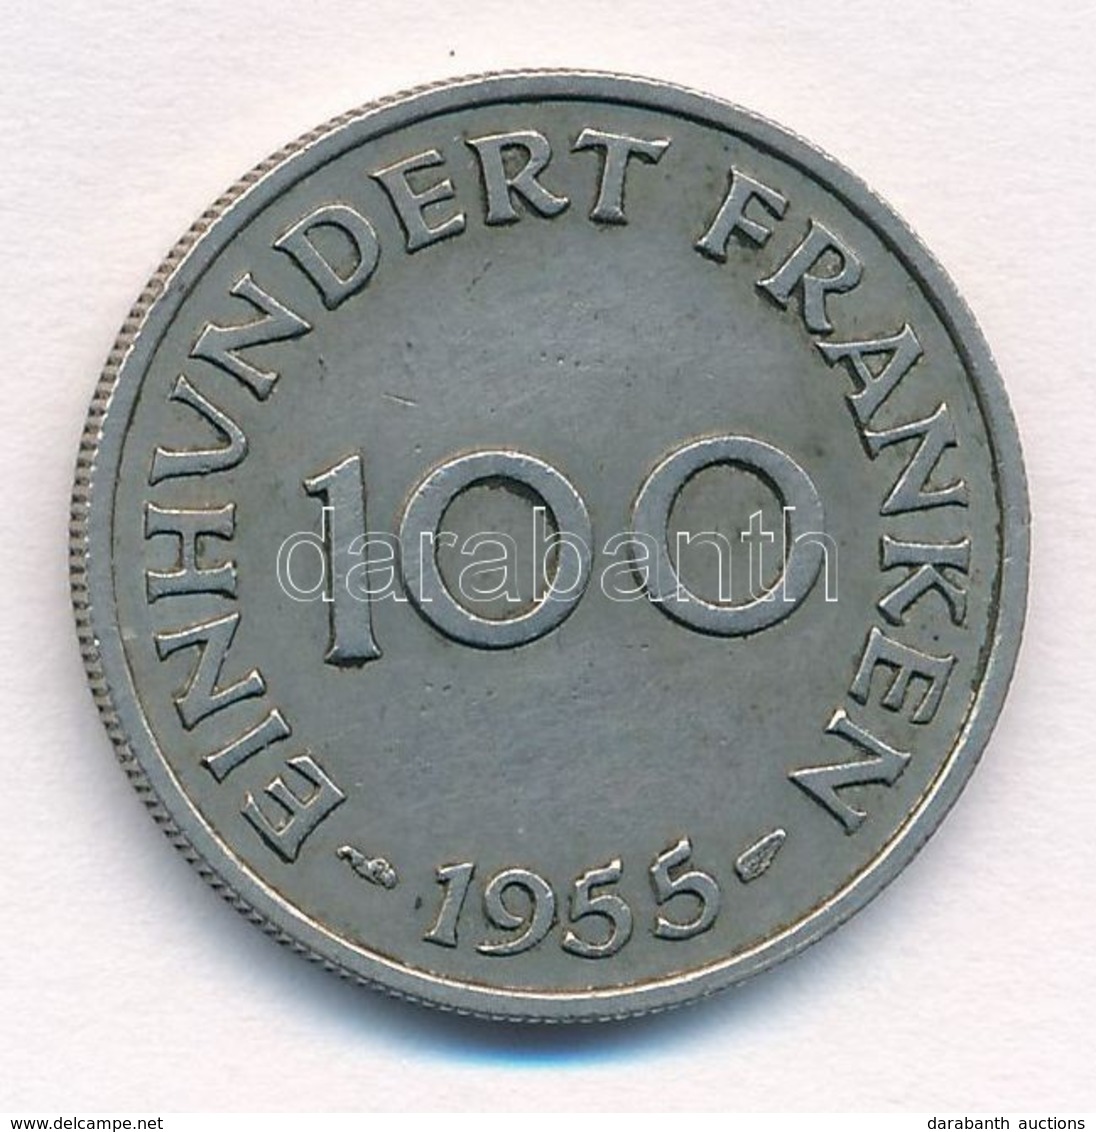 NSZK / Saar-vidék 1955. 100Fr Ni T:2
FRG / Saarland 1995. 100 Franken Ni C:XF
Krause KM#4 - Unclassified